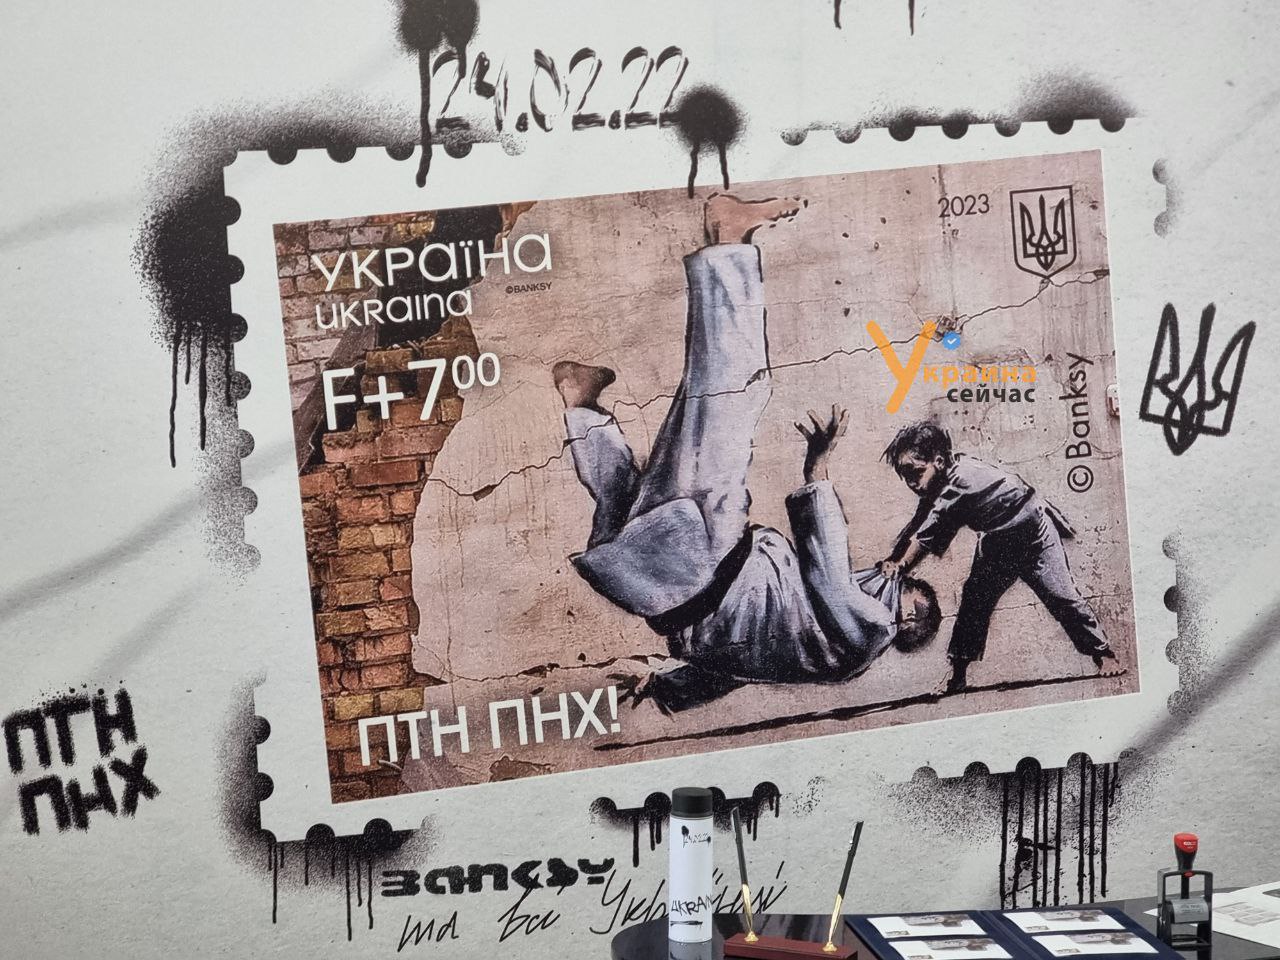 До річниці повномасштабного вторгнення Укрпошта ввела в обіг поштову марку «ПТН ПНХ!»